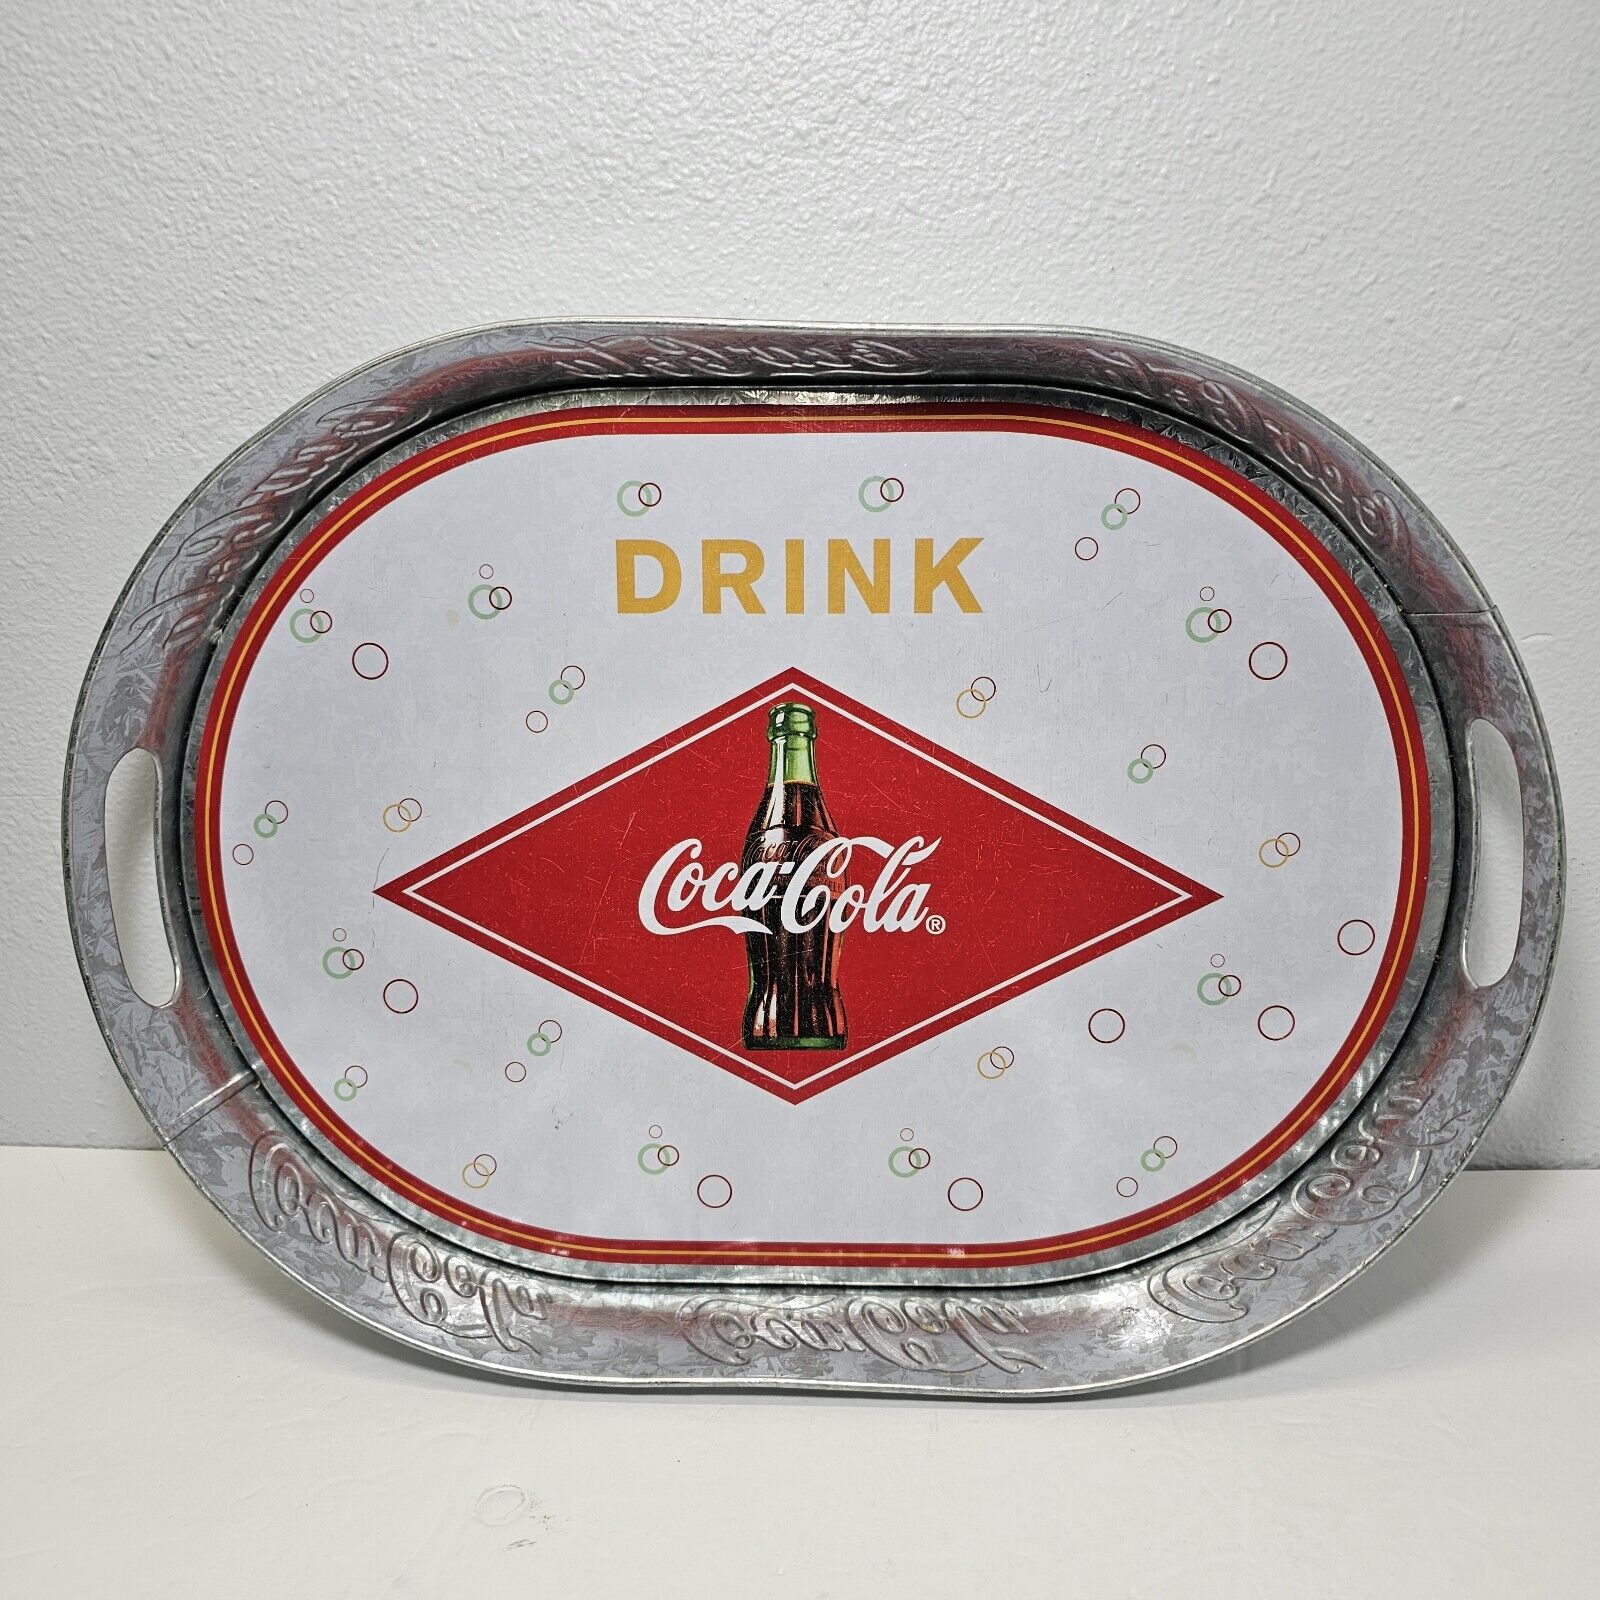 Vintage Coca-Cola Galvanized Tray with Handles Drink Cola